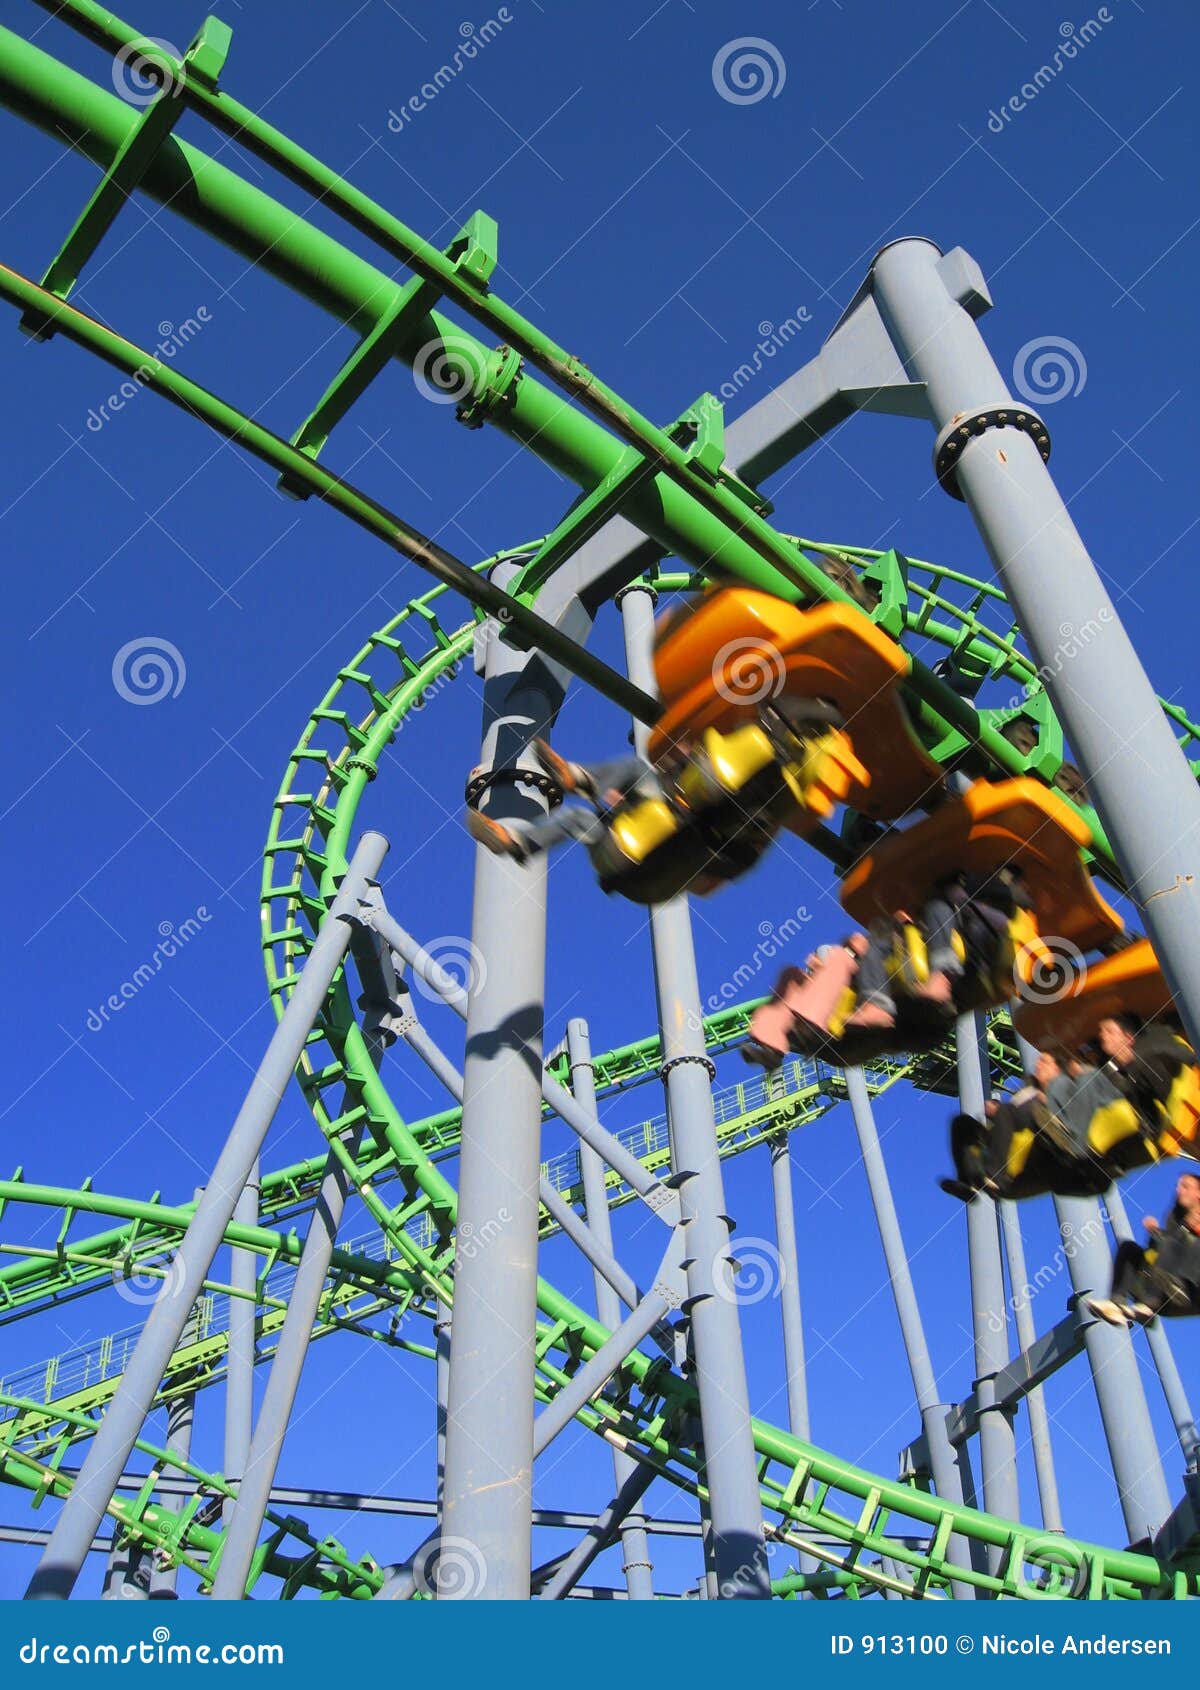 roller coaster in tigre